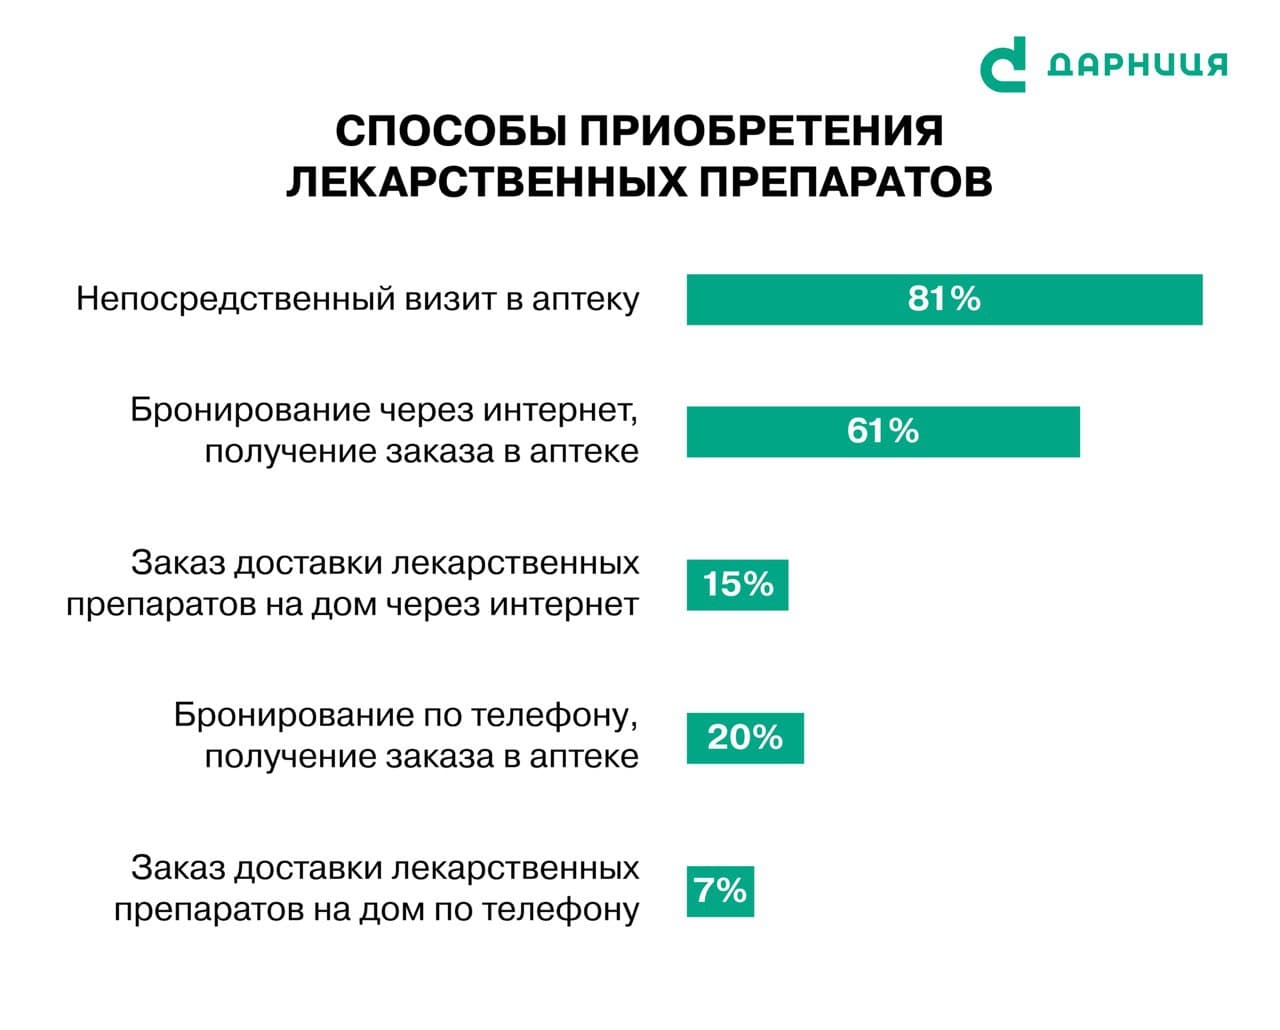 Украинцы гораздо чаще покупают лекарства в аптеках, чем онлайн, - исследование